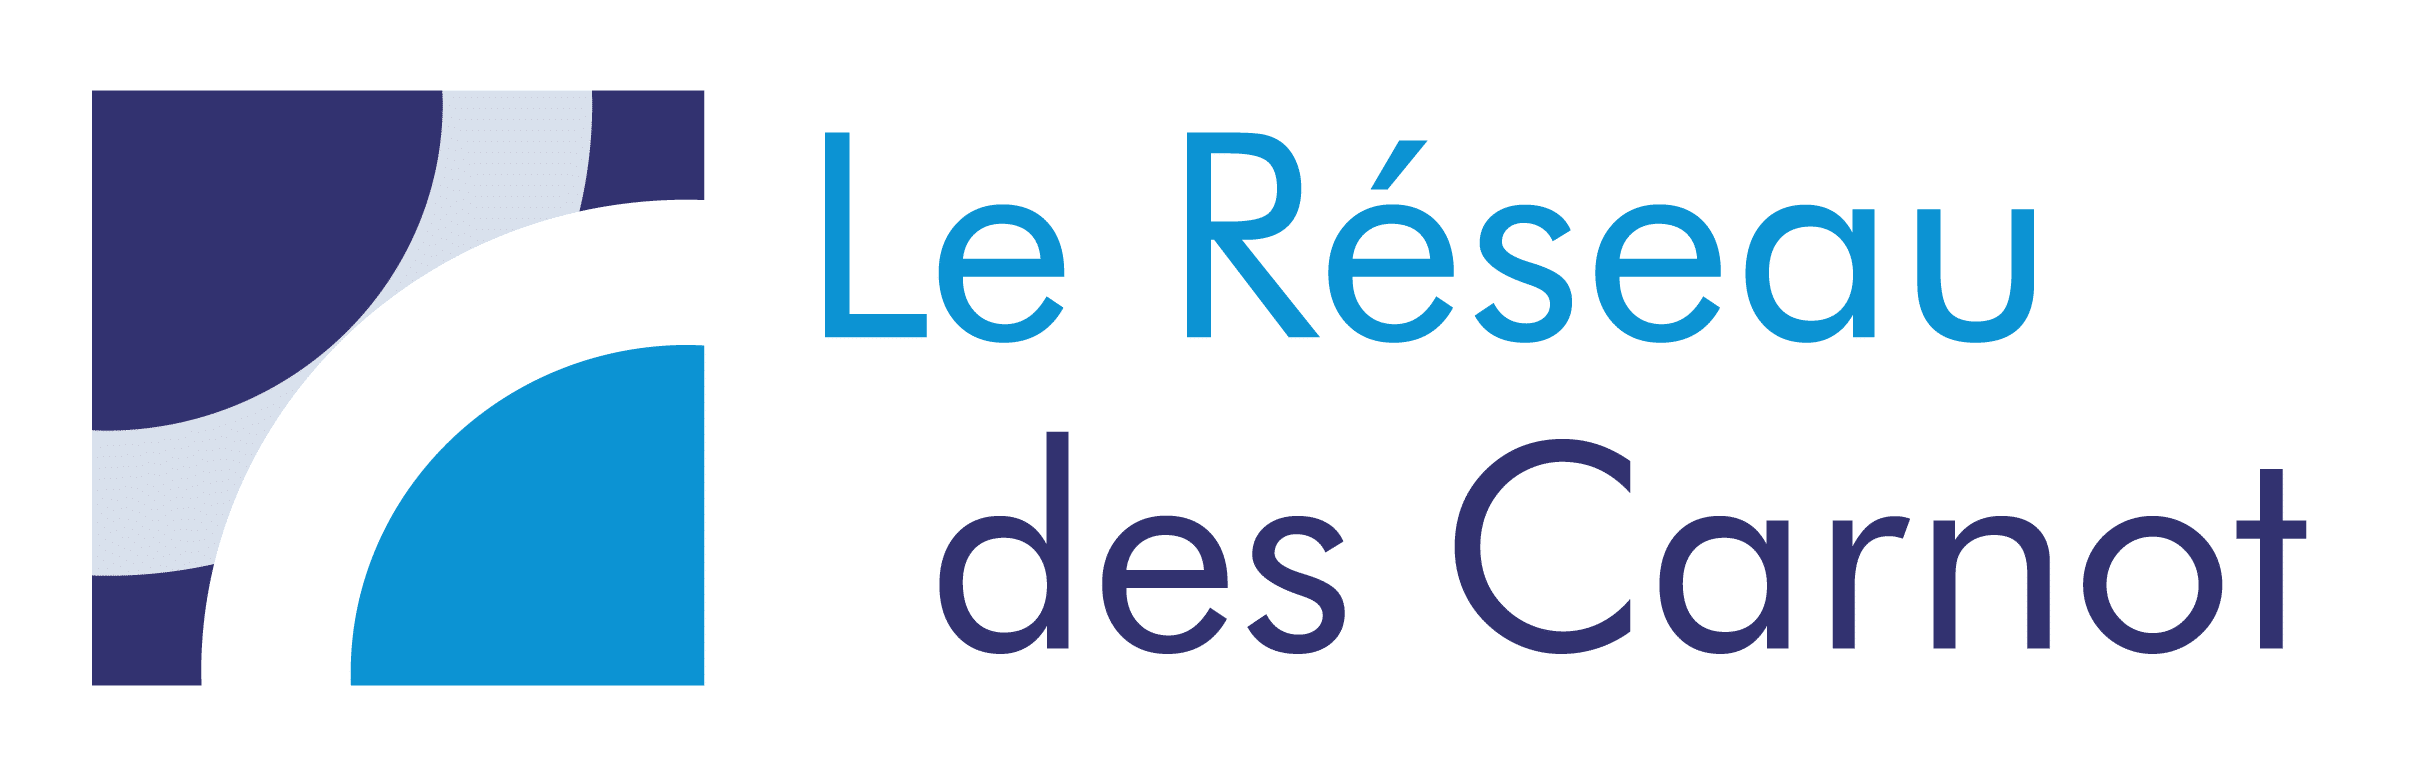 Logo_Le-Reseau-des-Carnot